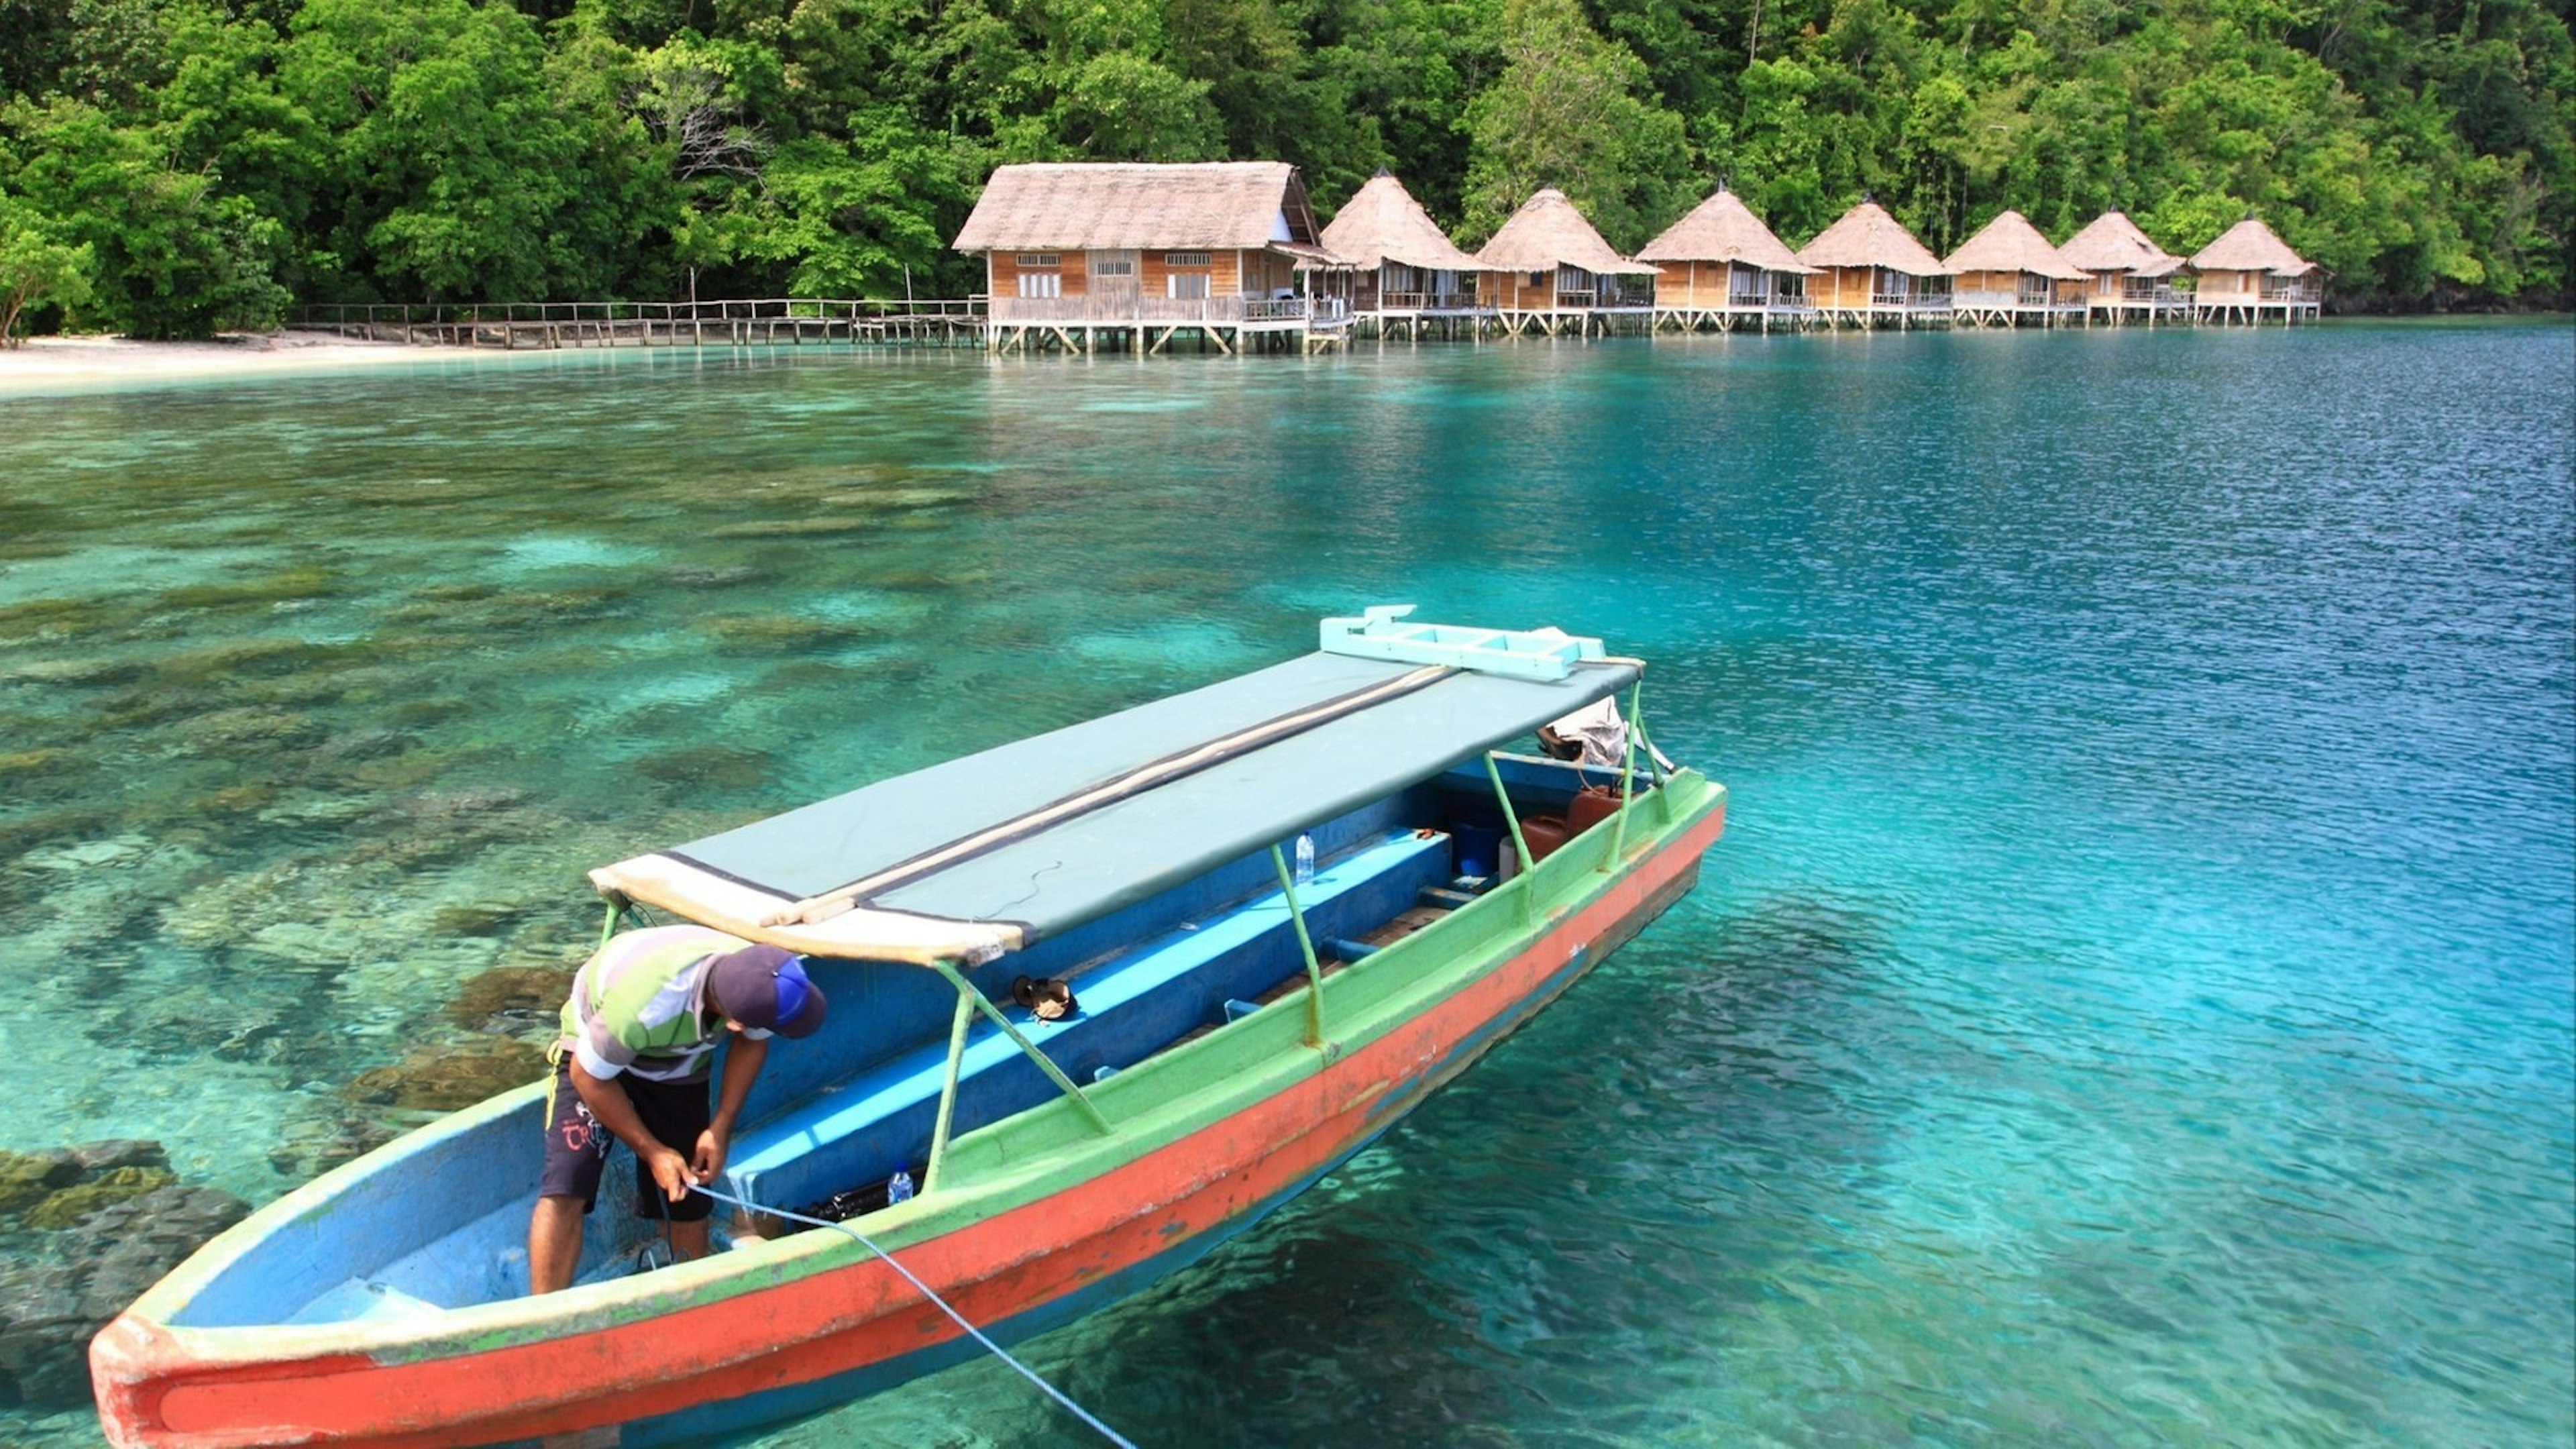 Ora Beach Resort in Seram Island, Central Maluku, Indonesia